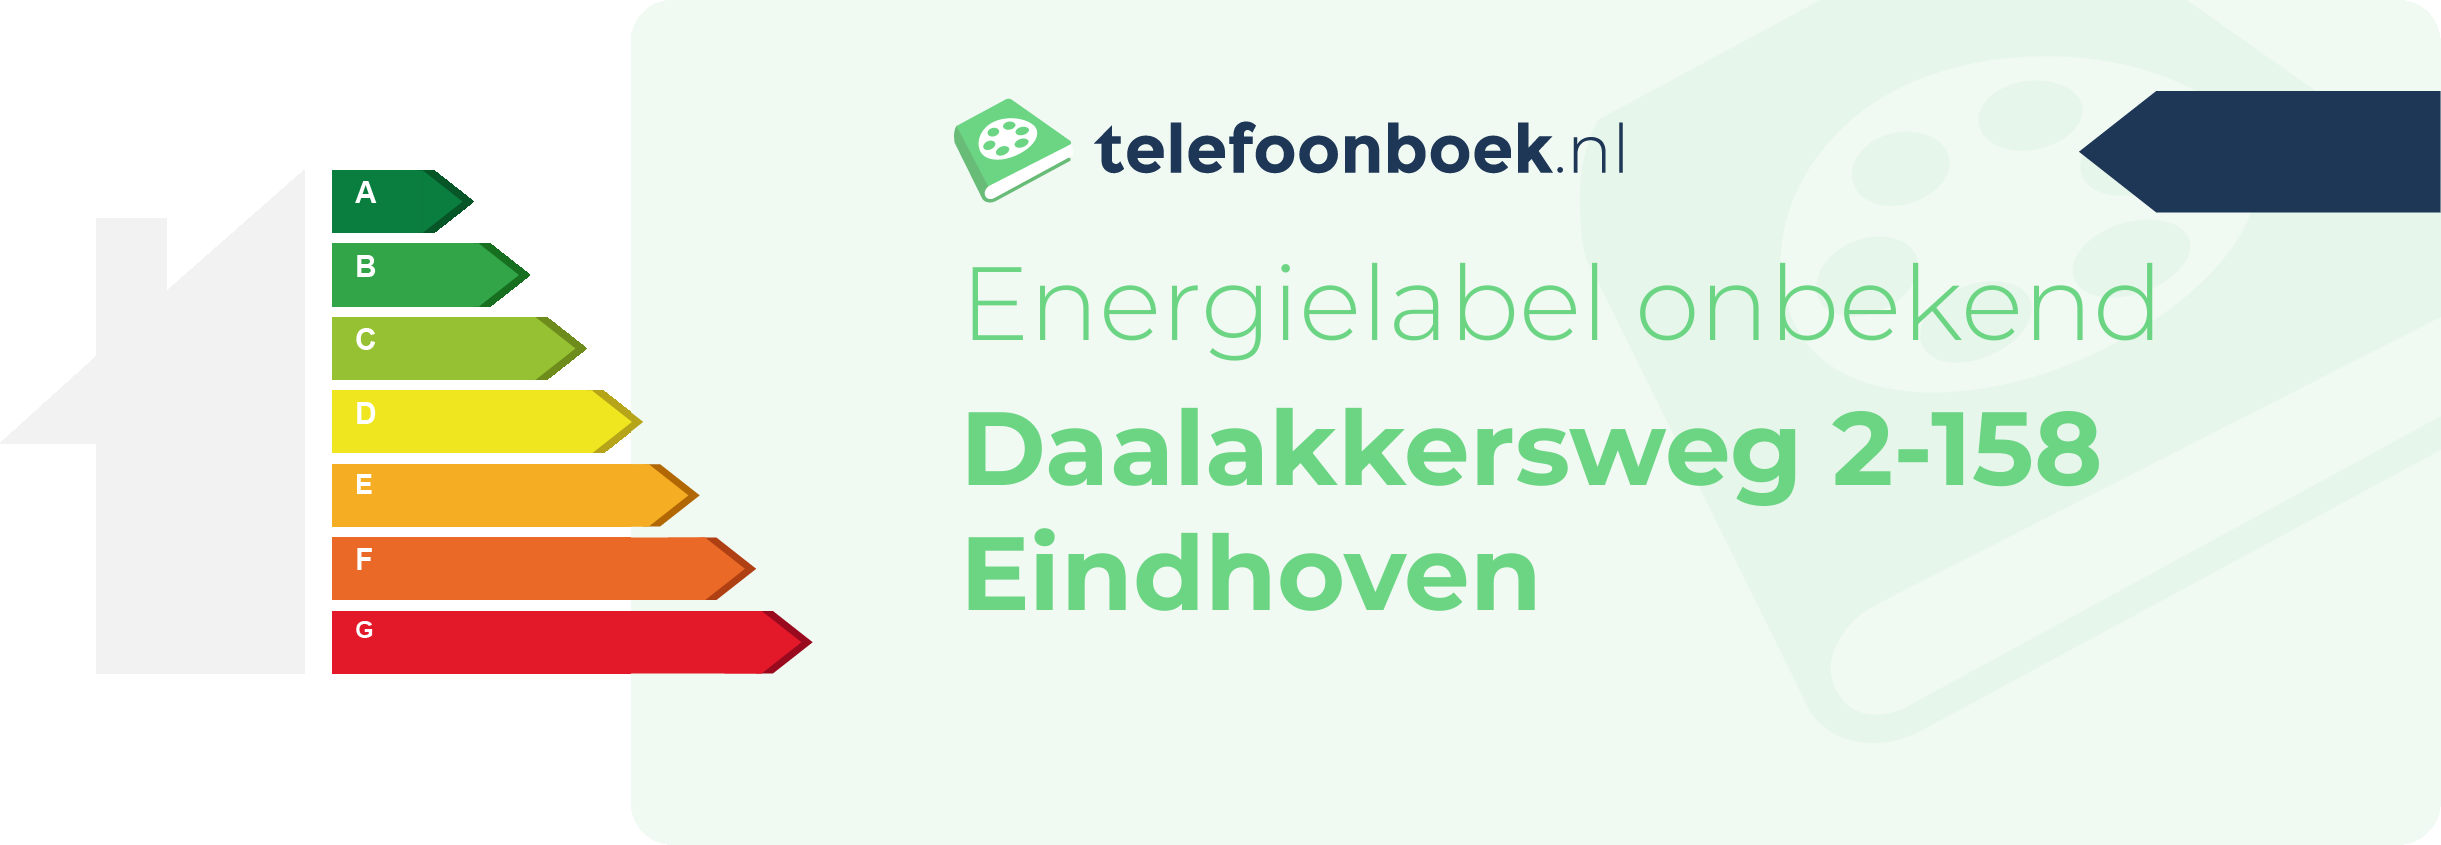 Energielabel Daalakkersweg 2-158 Eindhoven